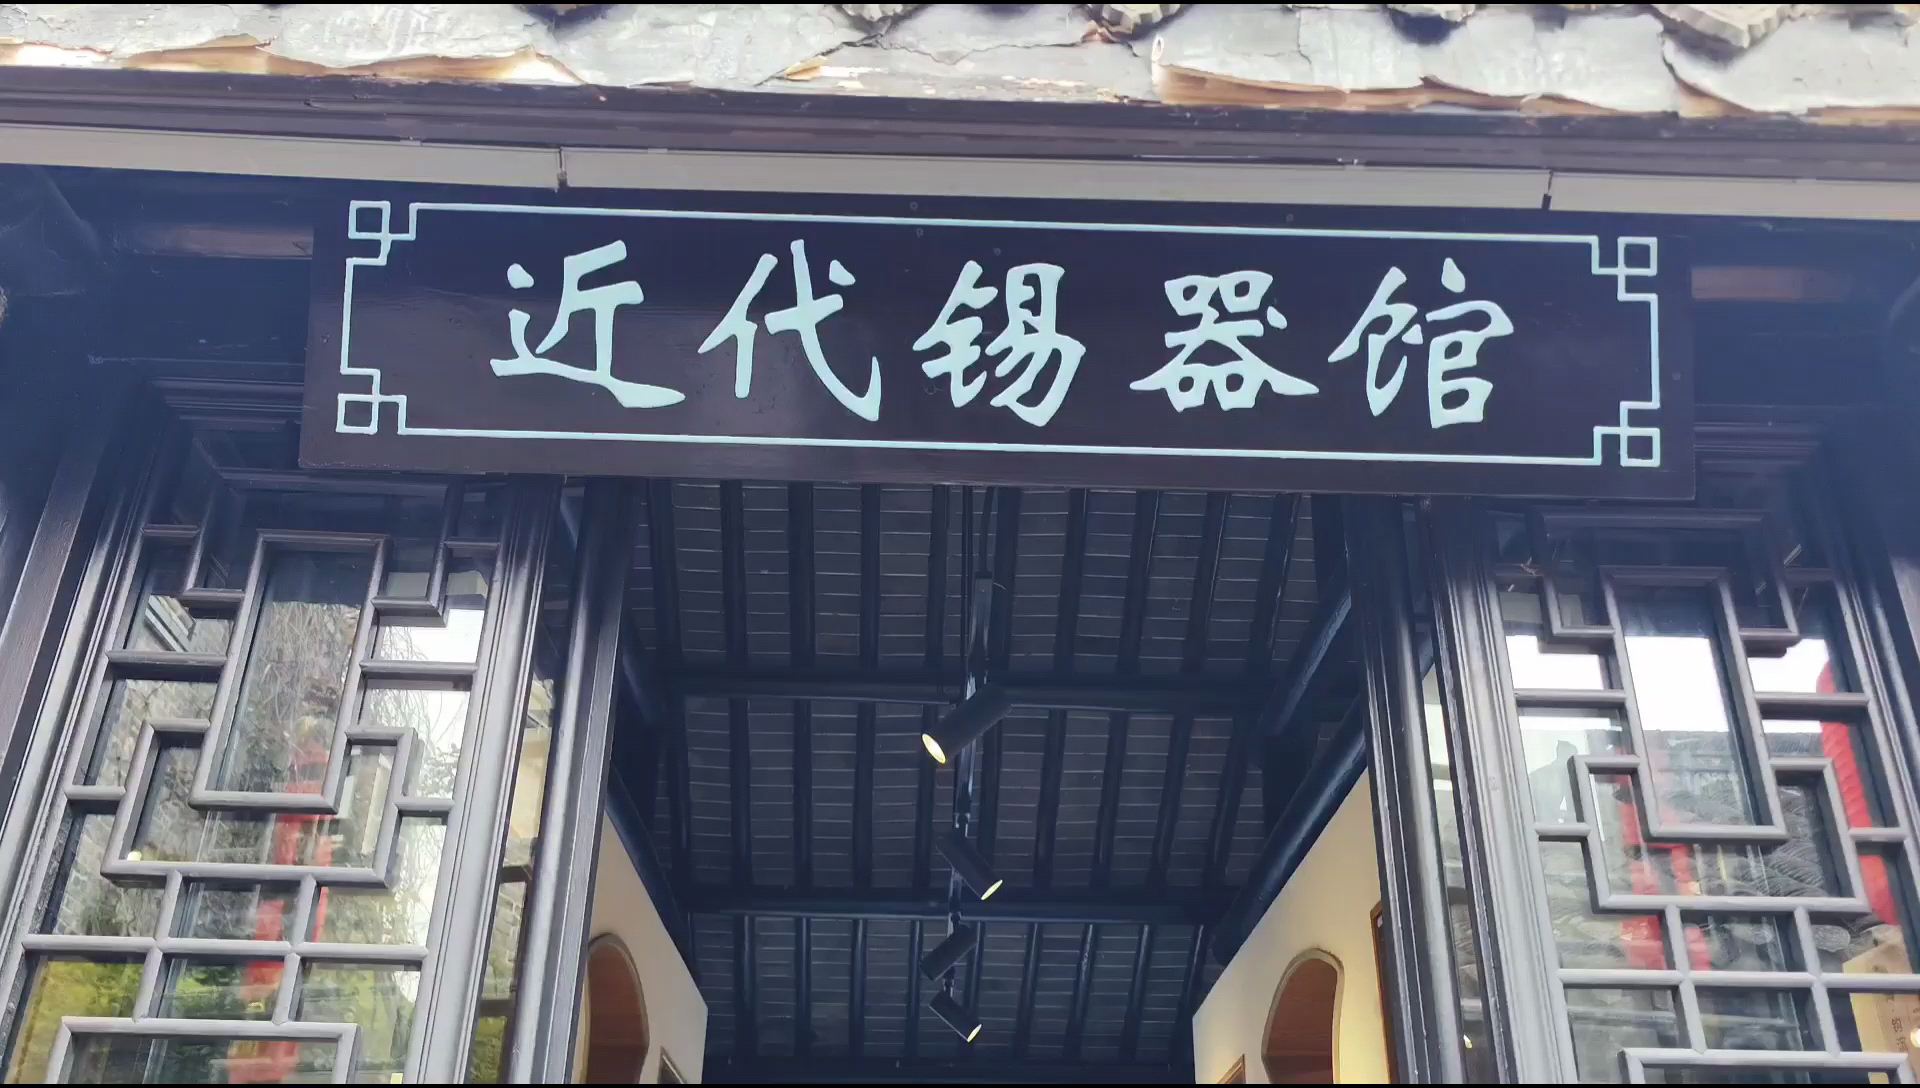 安丰古镇内的近代锡器馆，是一个展示和传承锡器工艺文化的重要场所。锡器馆收藏了众多精美的锡器作品，每一